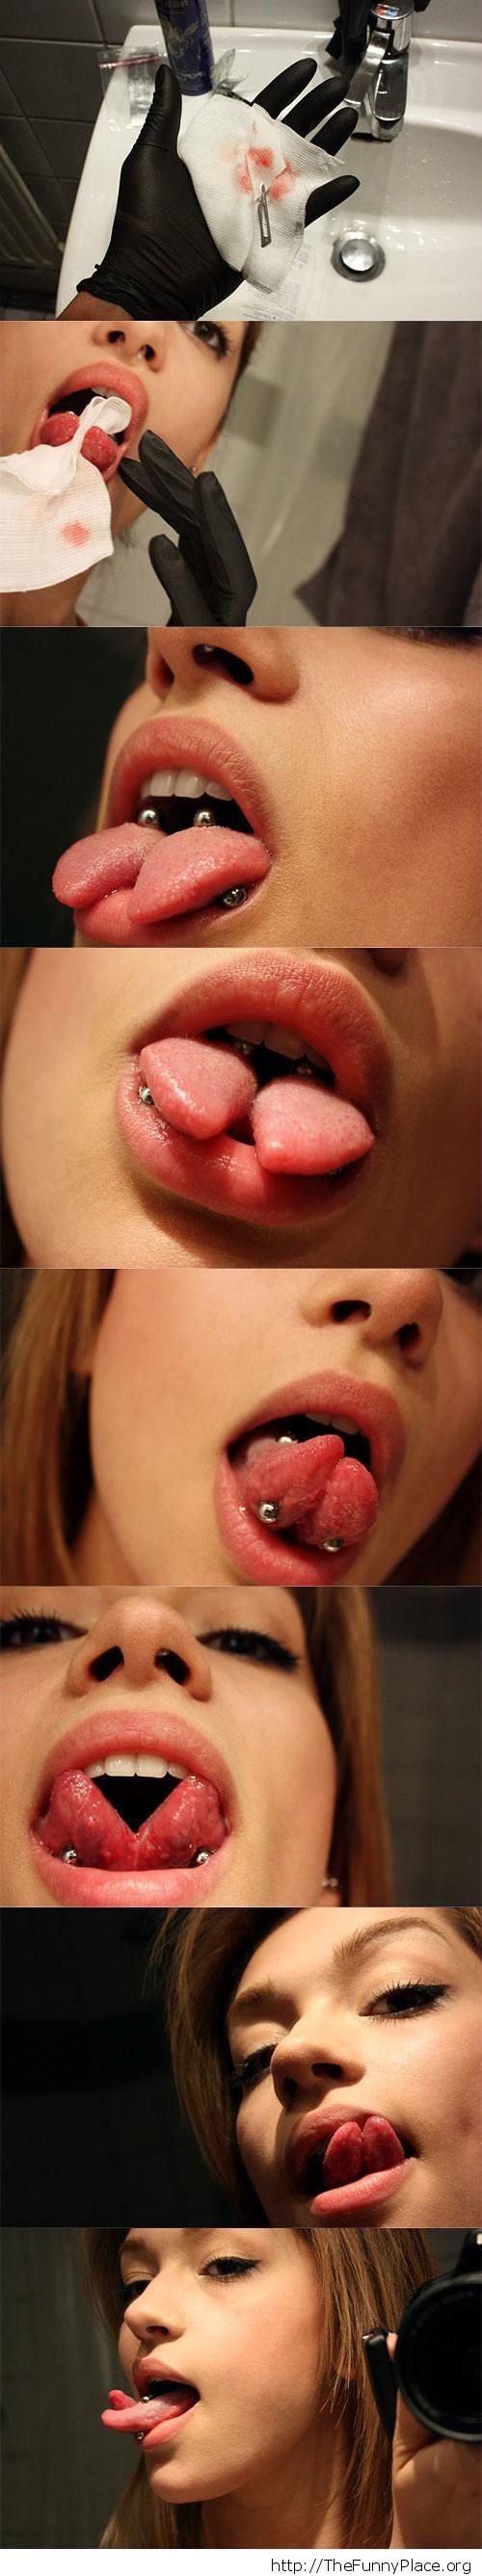 Just a split tongue